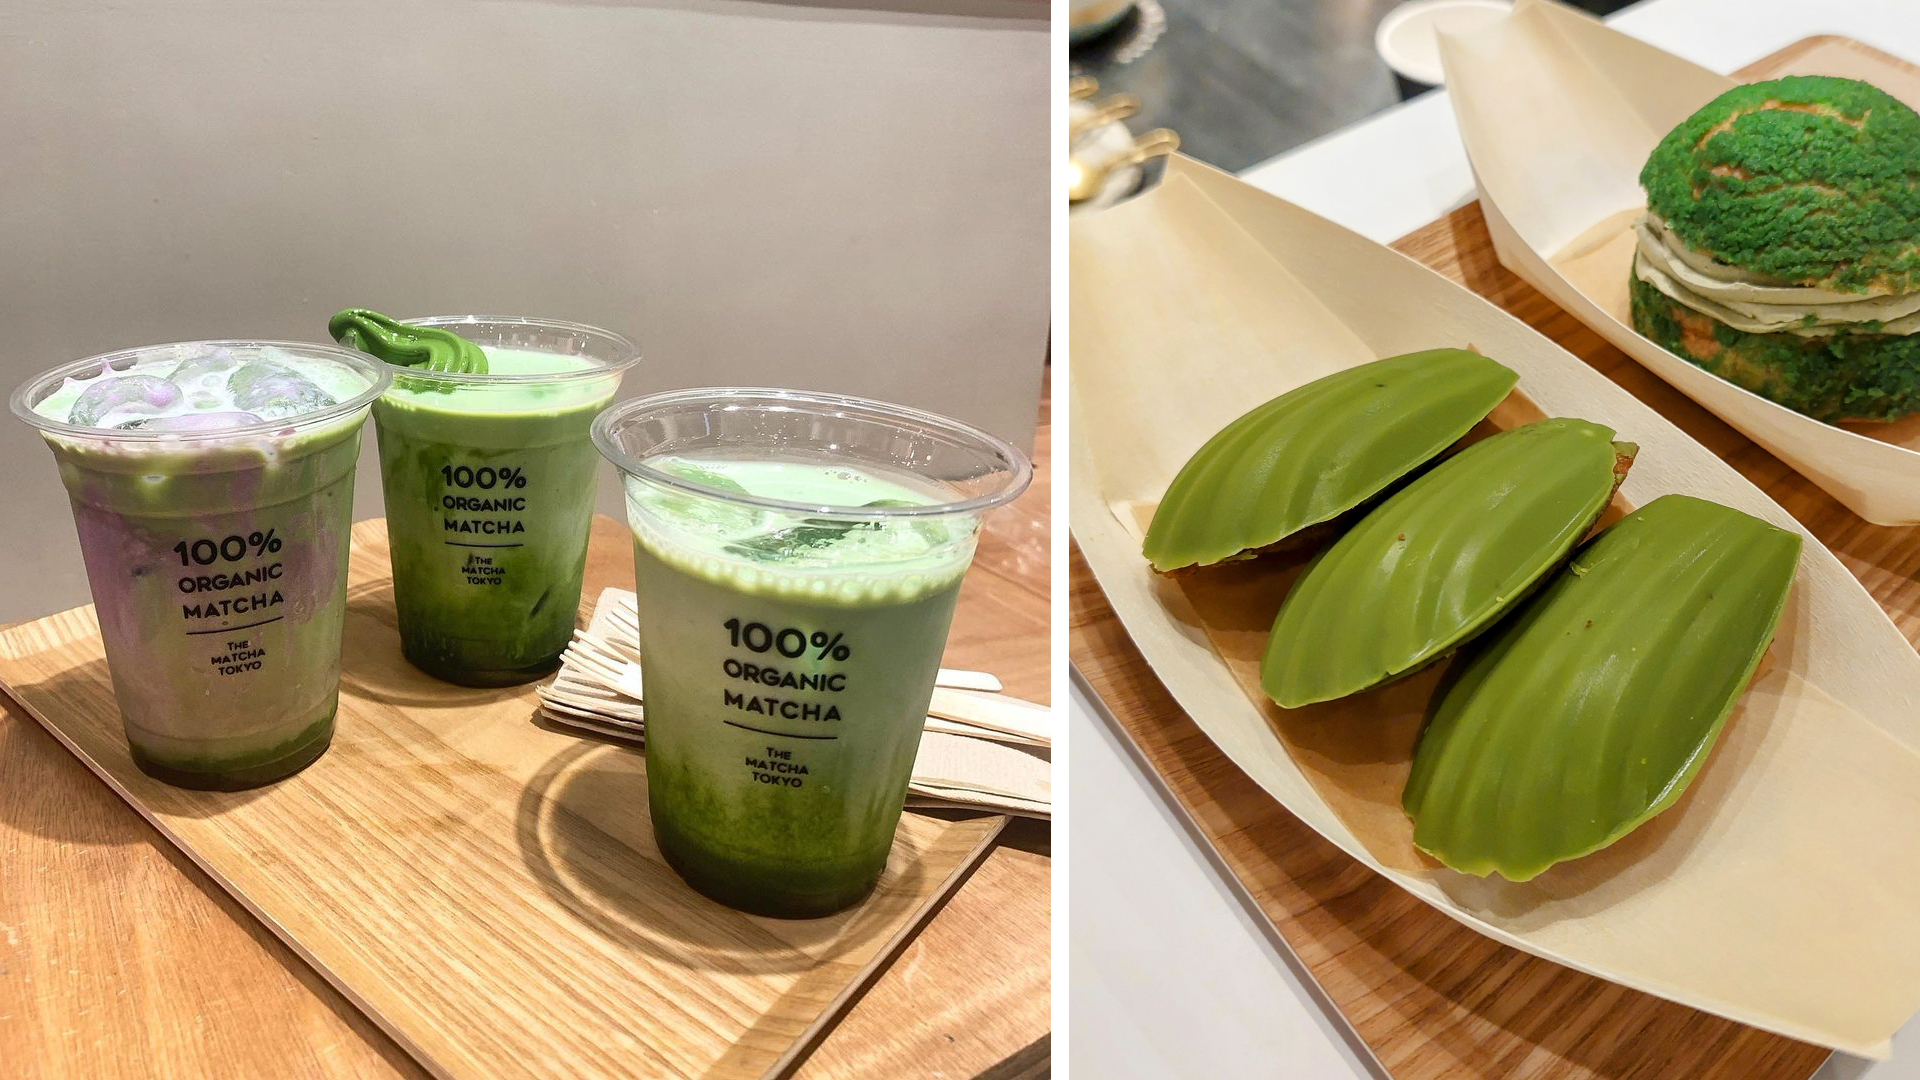 The Matcha Tokyo - organic matcha drinks and snacks